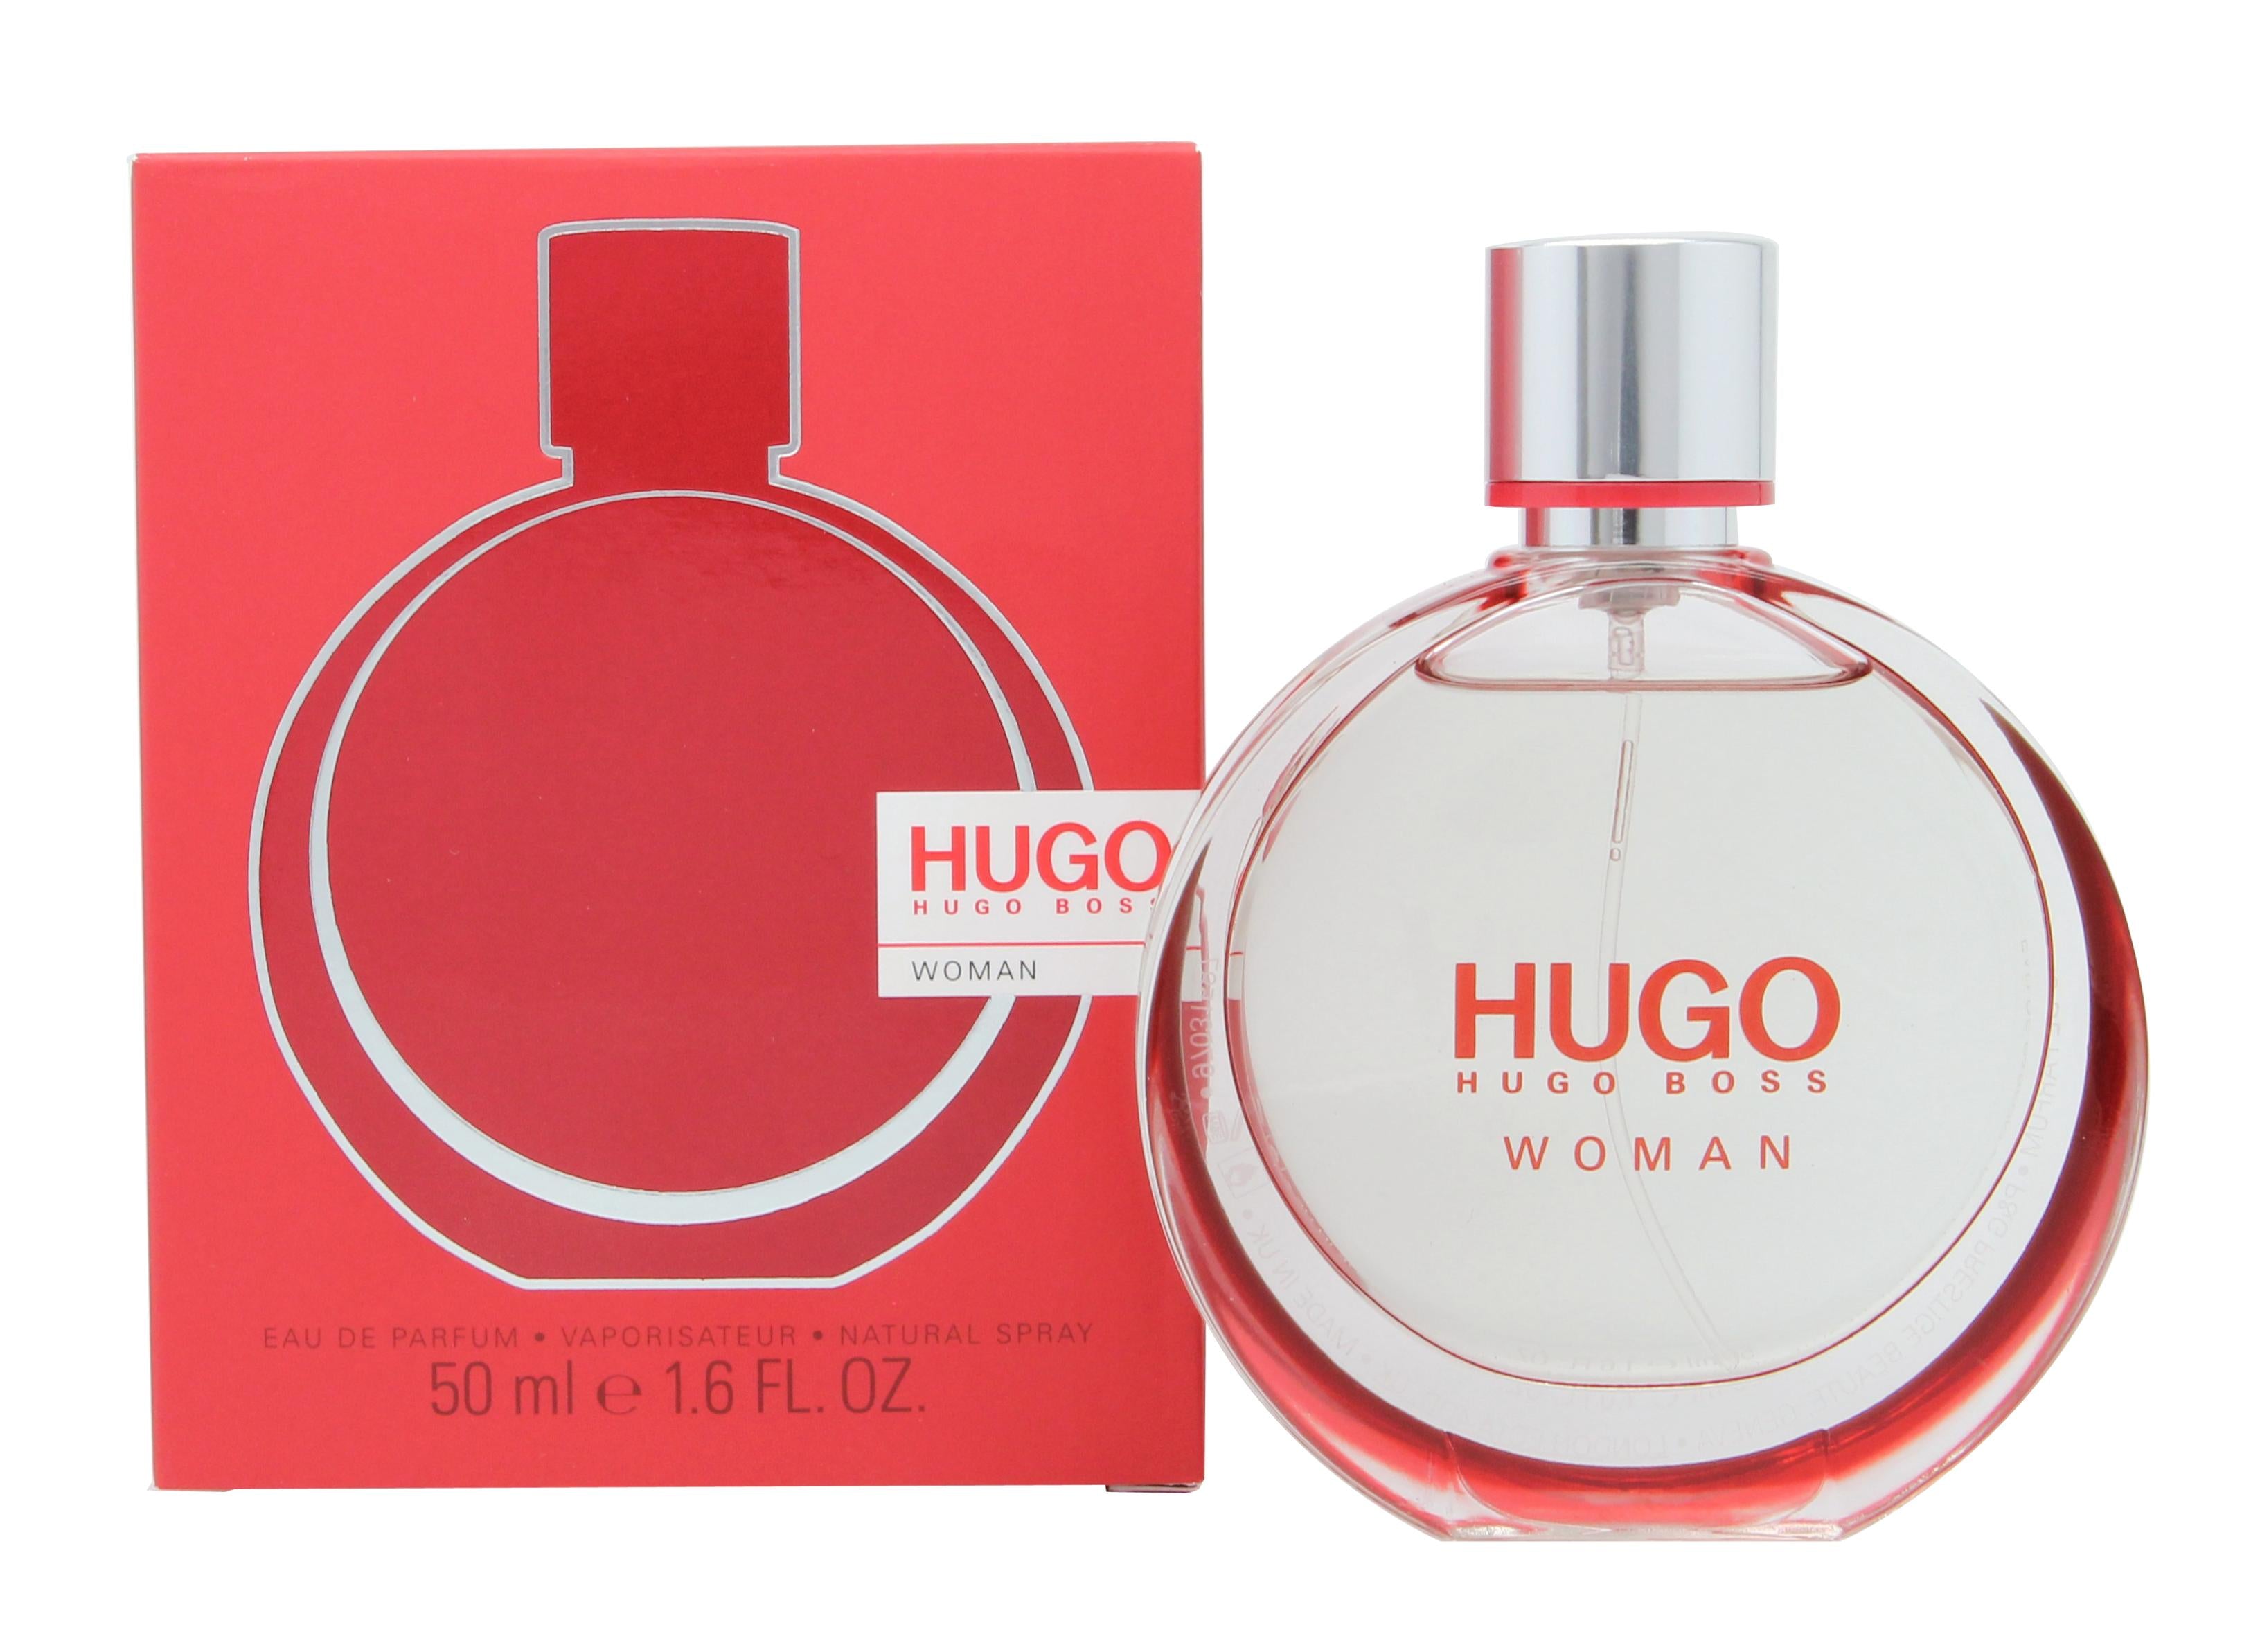 View Hugo Boss Hugo Woman Eau de Parfum 50ml Spray information